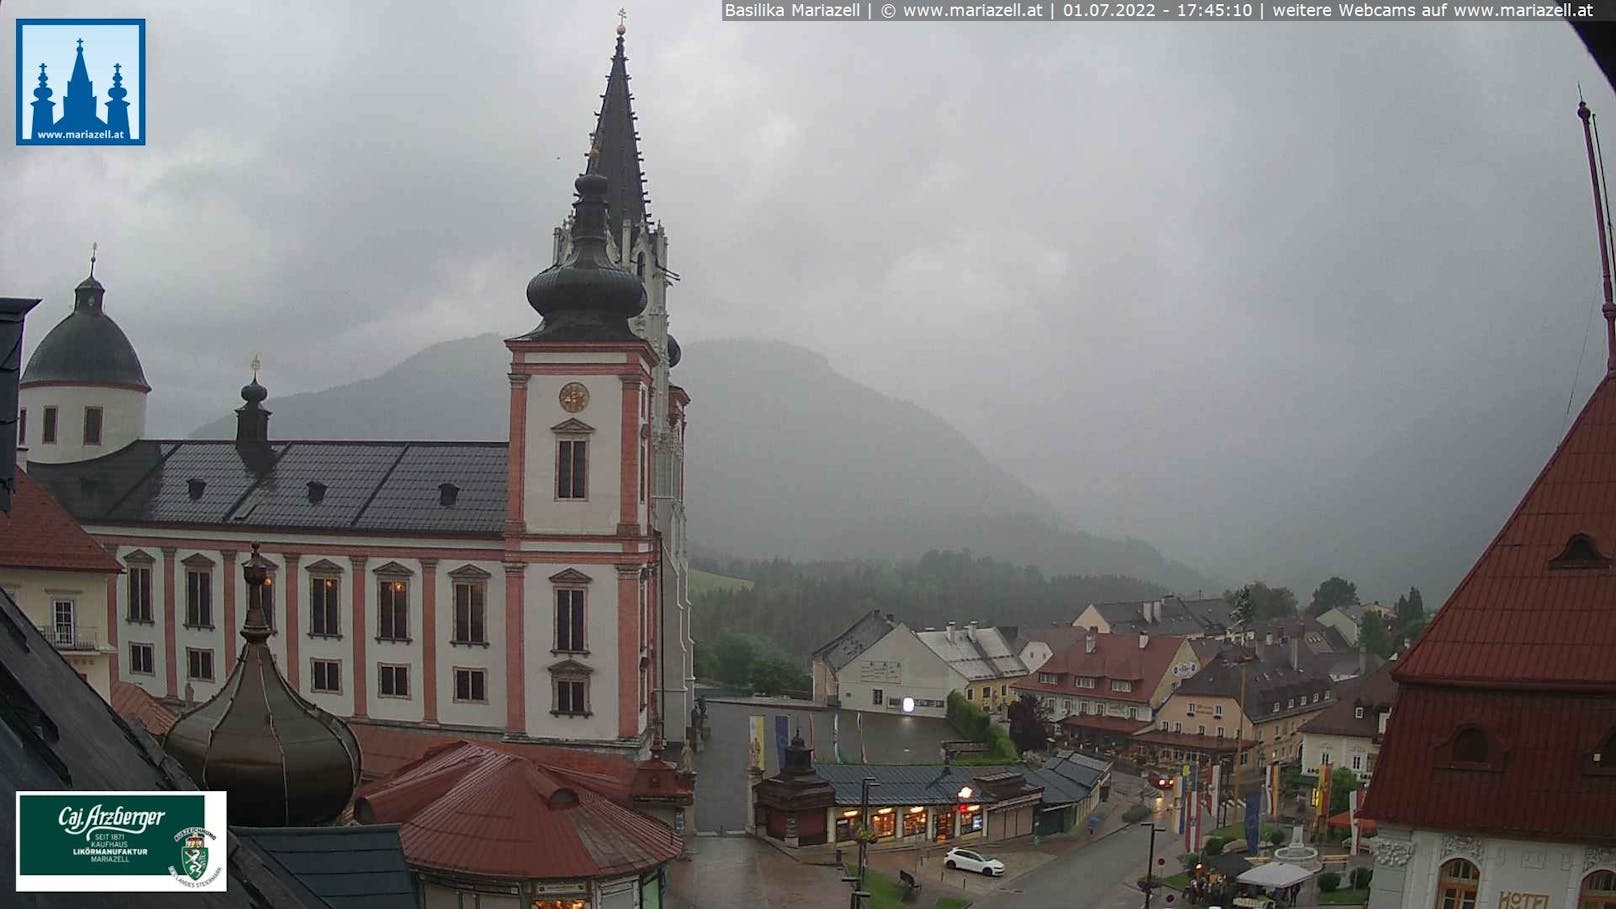 Webcam-Bild aus Mariazell um 17.45 Uhr.